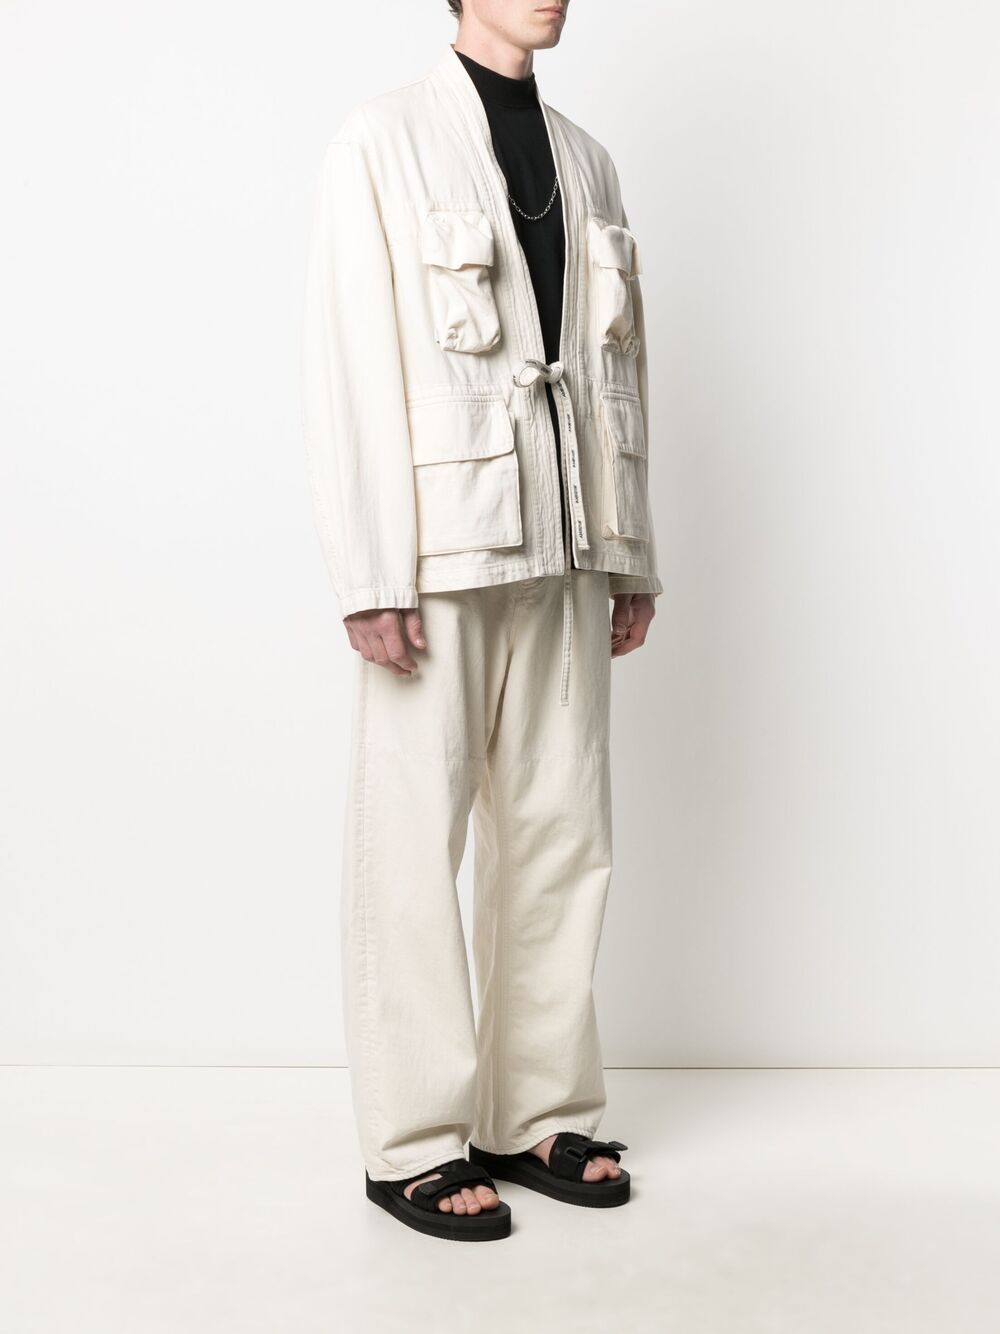 AMBUSH Kimono Denim Jacket Beige - MAISONDEFASHION.COM